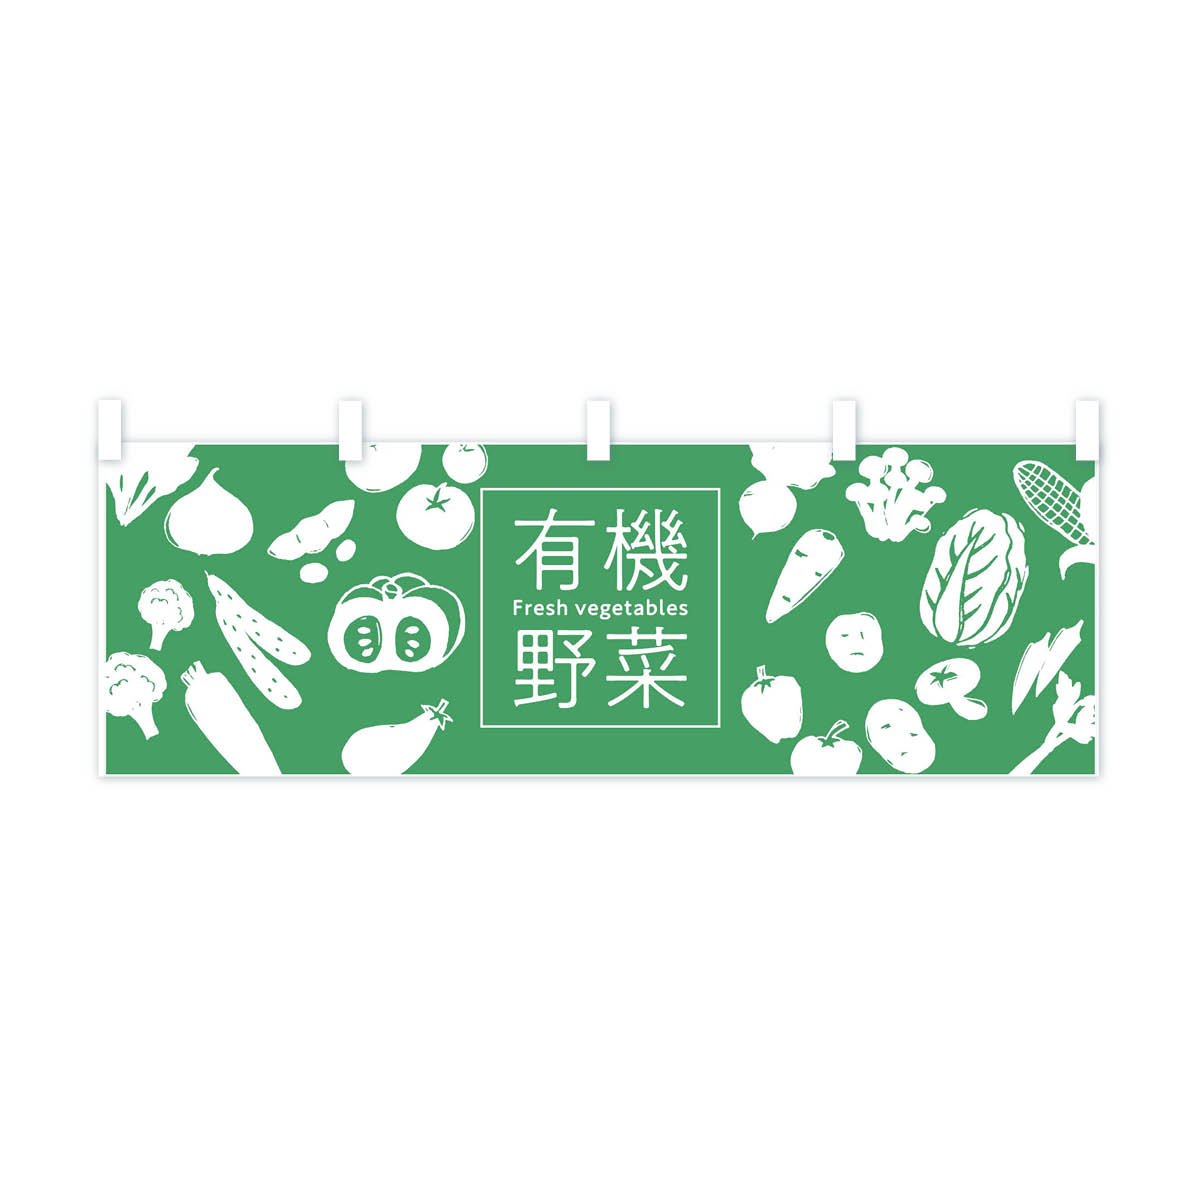 【ネコポス送料360】 横幕 有機野菜 7GJ0 Fresh vegetables 新鮮野菜・直売